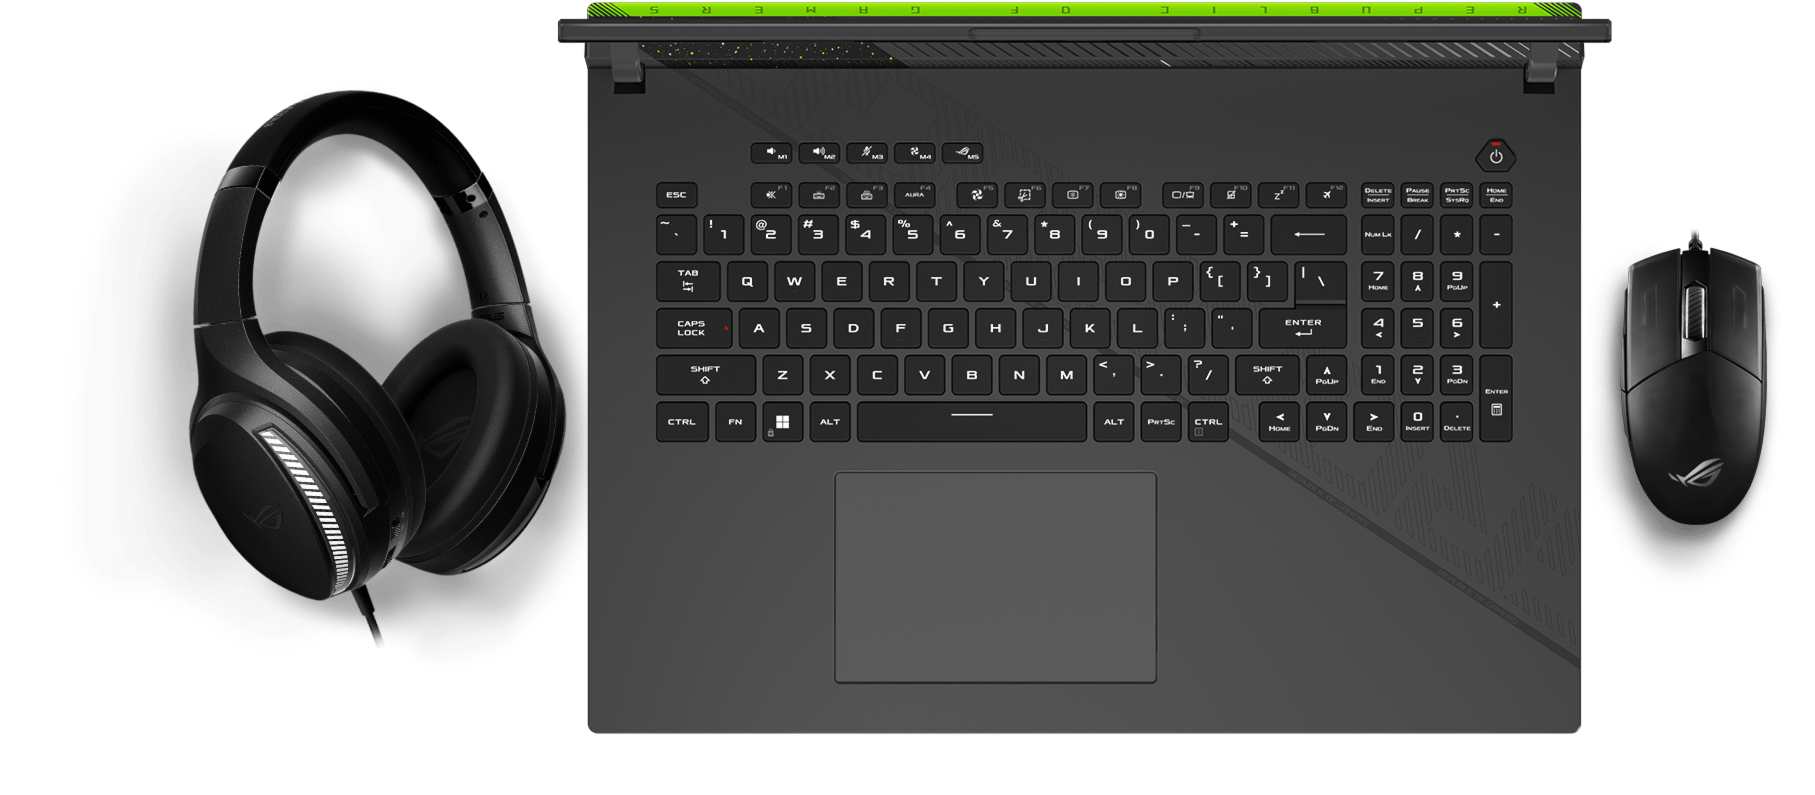 Фотографія клавіатури, що показує синхронізацію світлових ефектів Aura з мишею та навушниками.